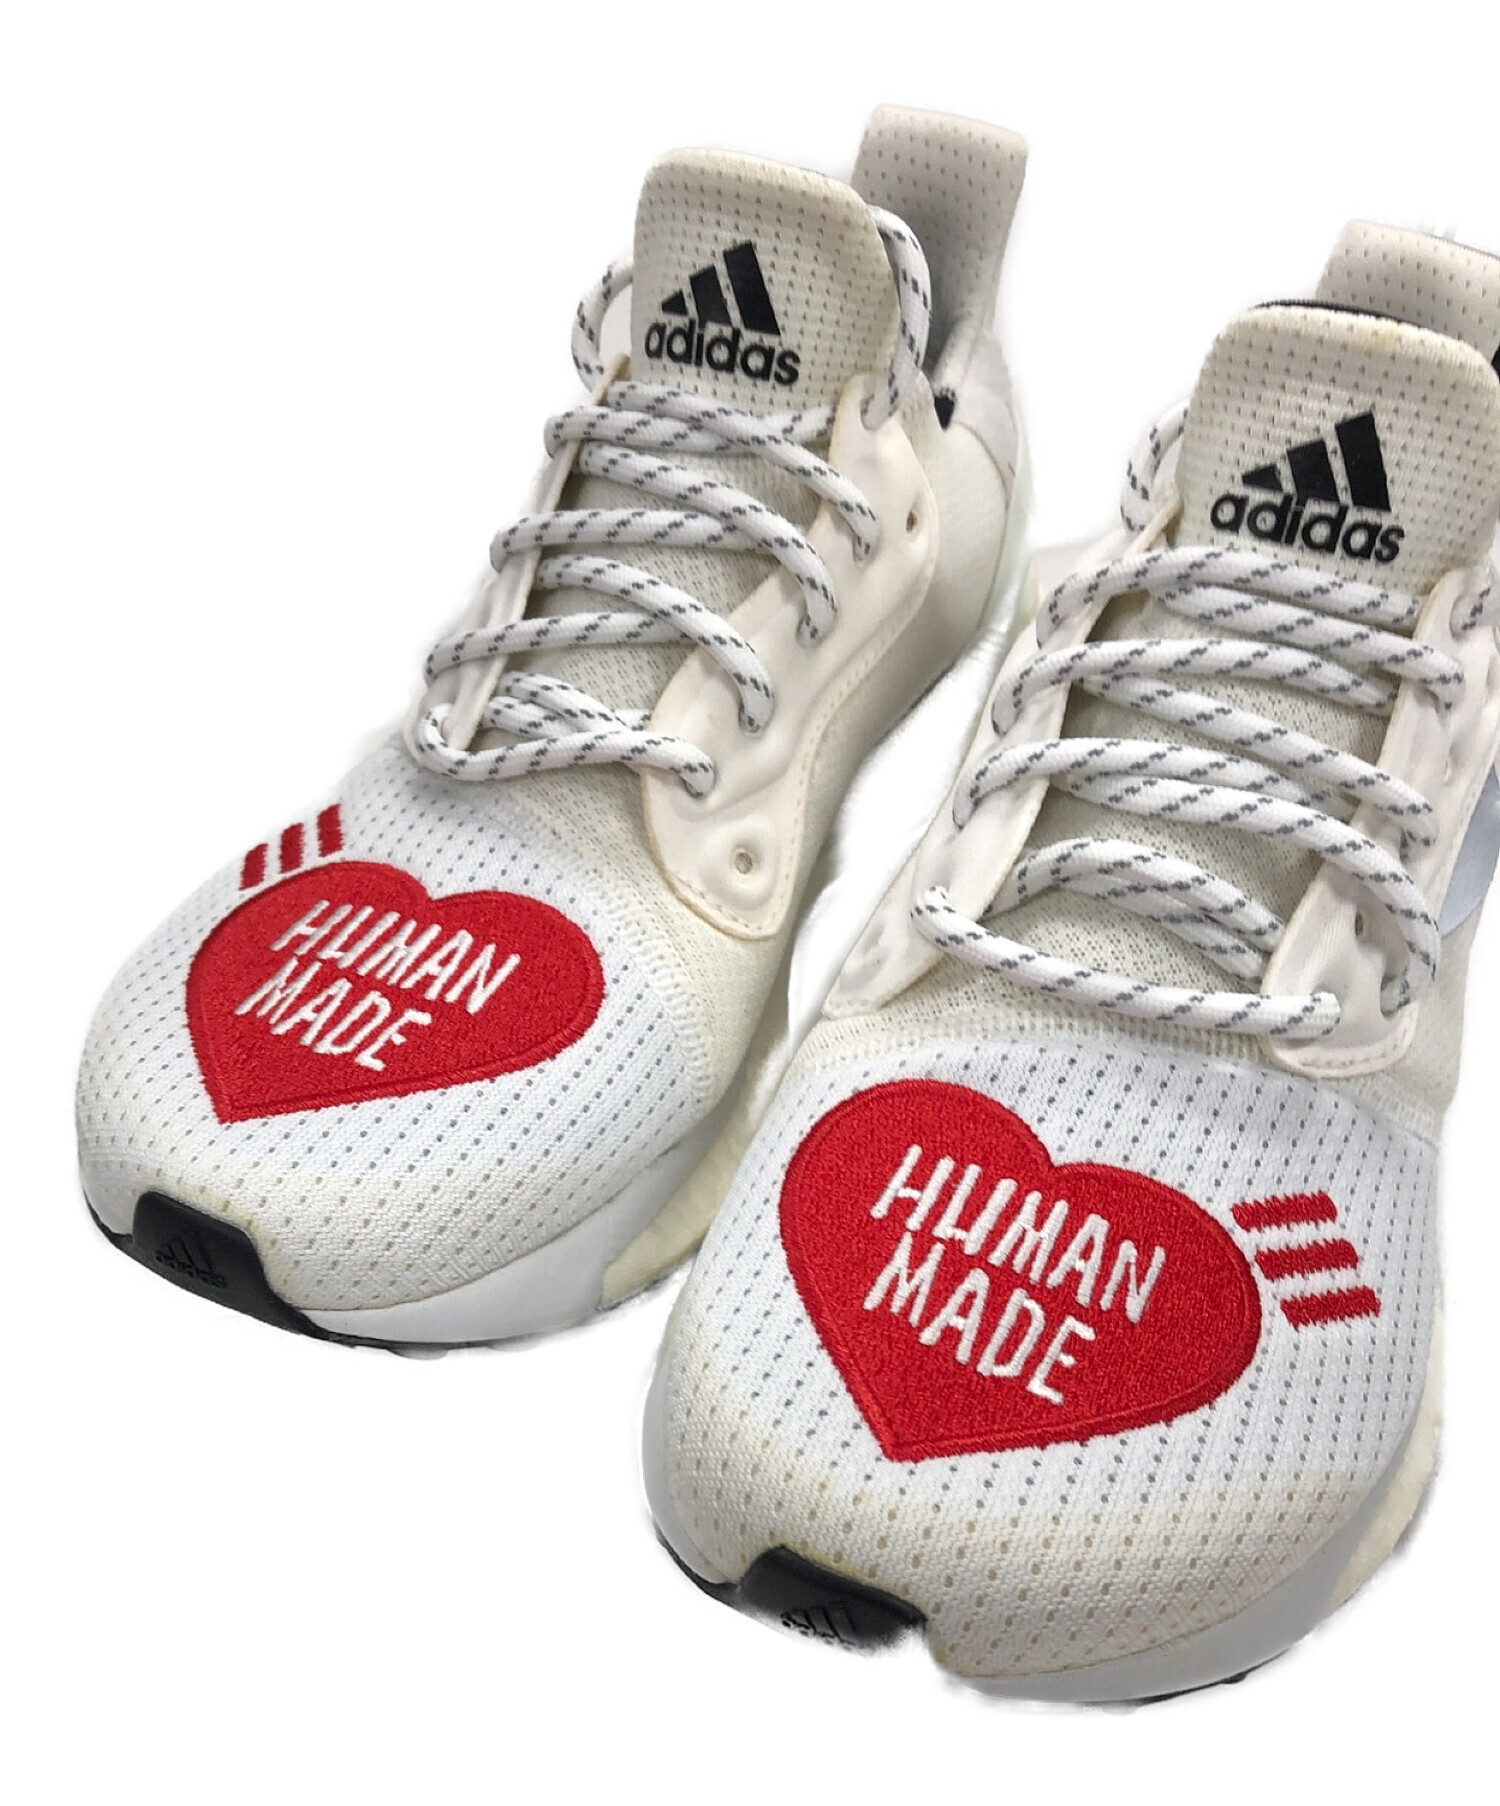 15999円新品未使用 adidas human Made 23cm ホワイト-